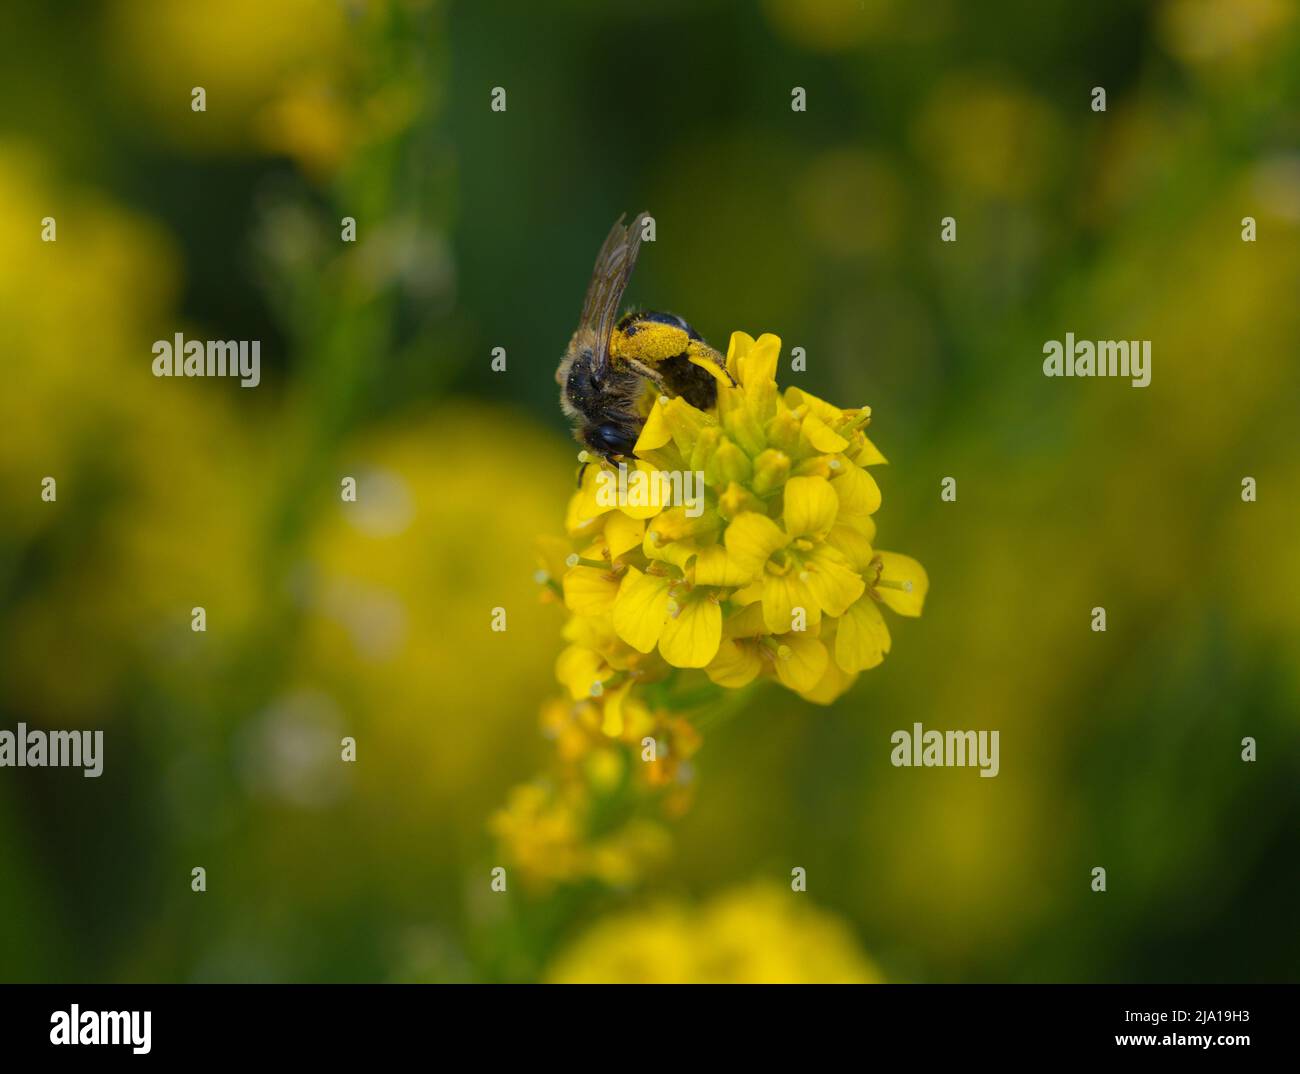 Macro photography of a honey bee Stock Photo